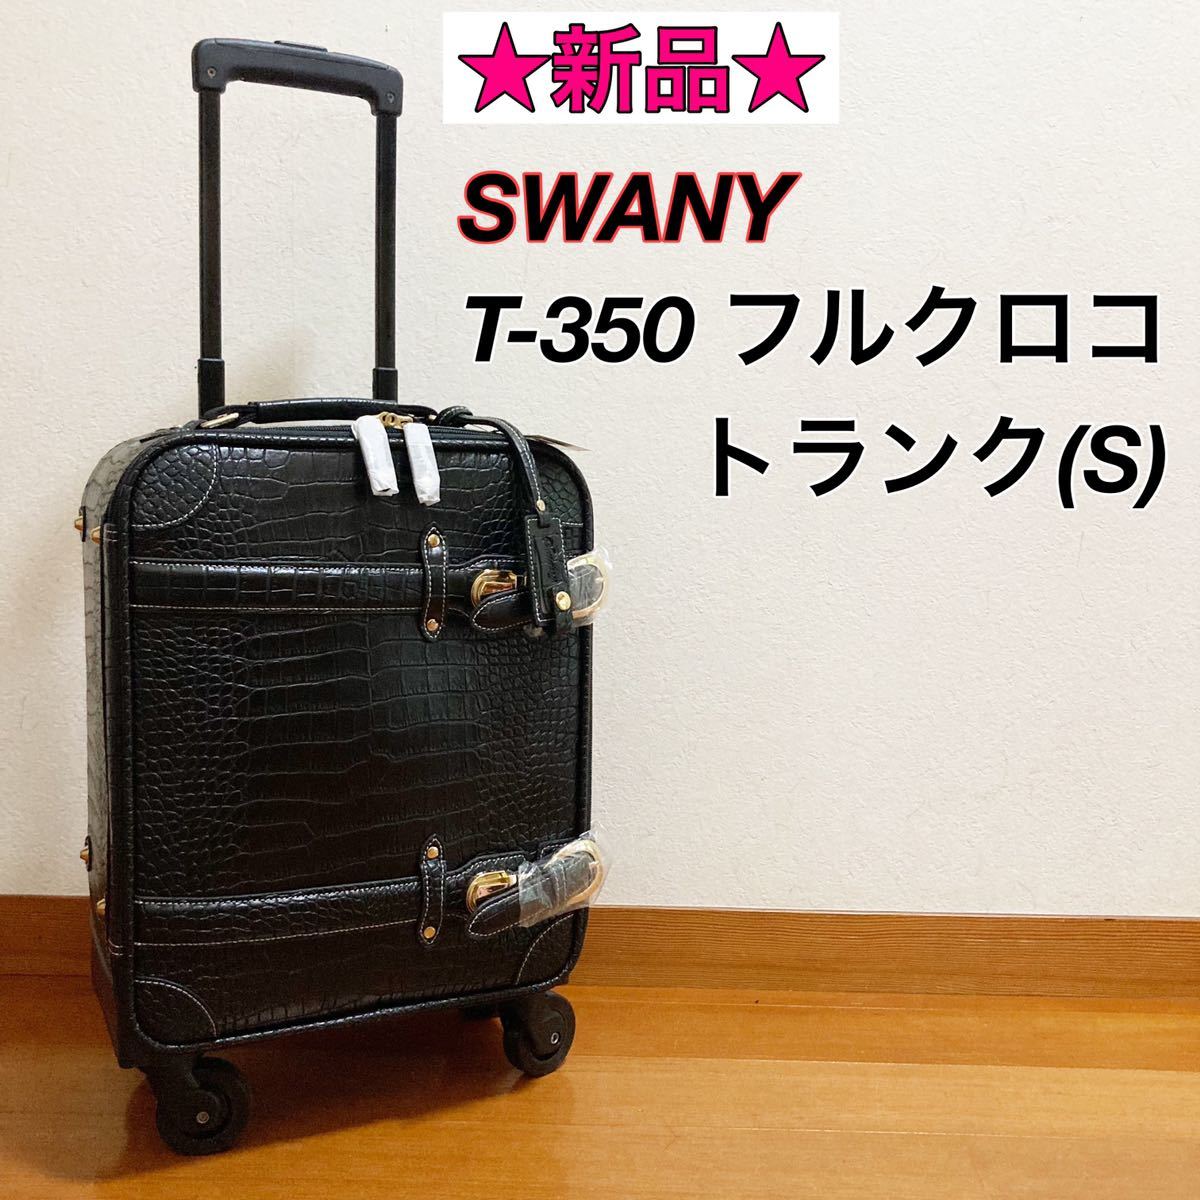 ◇極美品・送料無料◇ Swany スワニー キャリーバッグ クロコダイル型